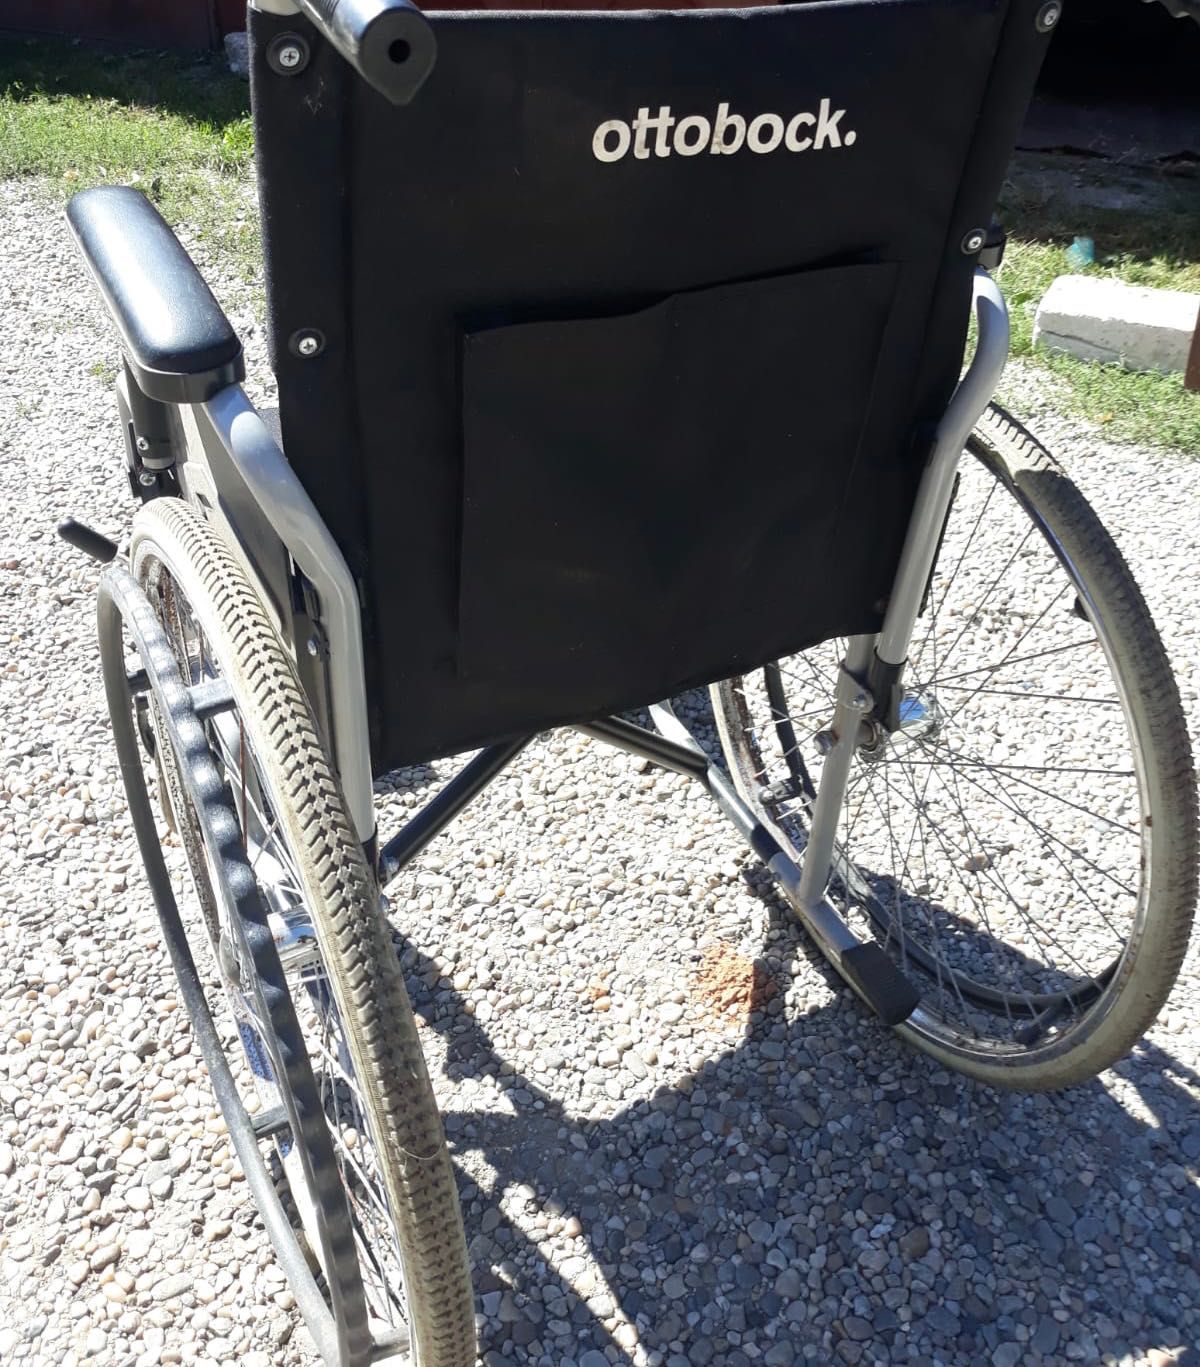 Carucior cu rotile, Otto Bock Mobility Solutions Gmbh